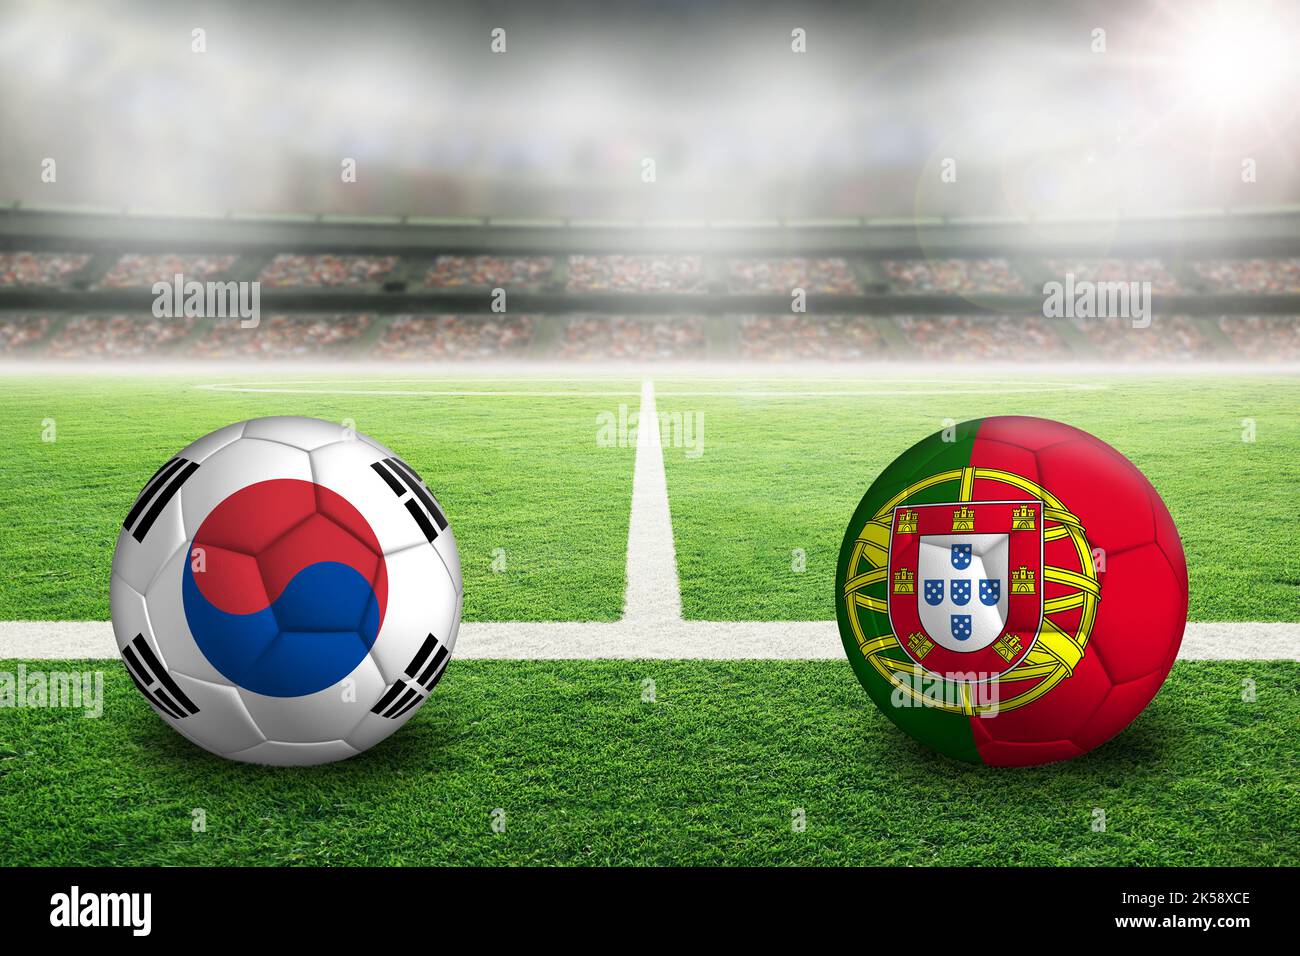 République de Corée contre Portugal football dans un stade en plein air lumineux avec drapeaux coréens et portugais peints. Concentrez-vous sur le premier plan et le ballon de football avec Banque D'Images